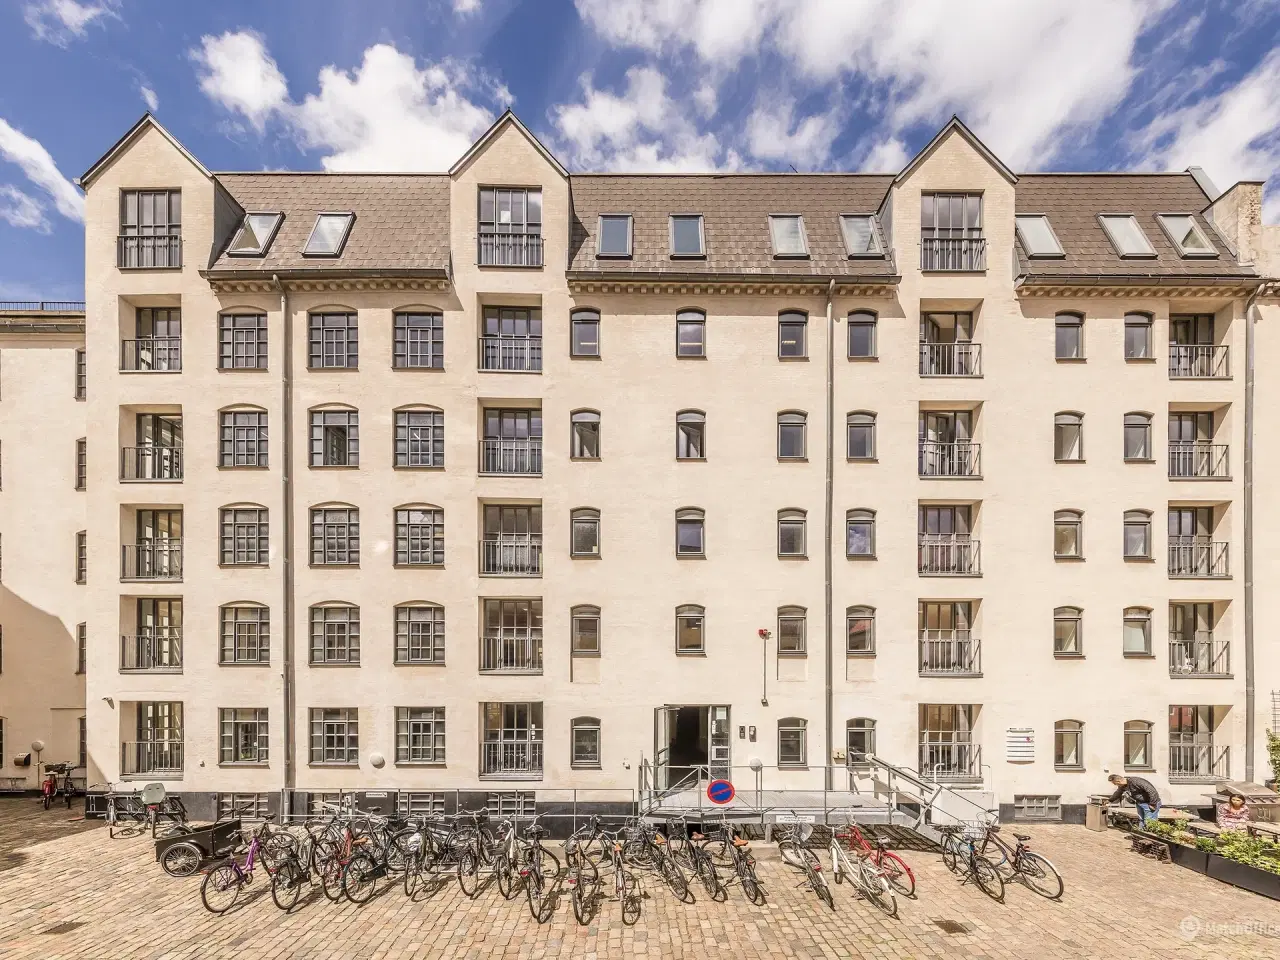 Billede 2 - Kontorer i historisk ejendom i Københavns hyggelige og livlige Latinerkvarter.